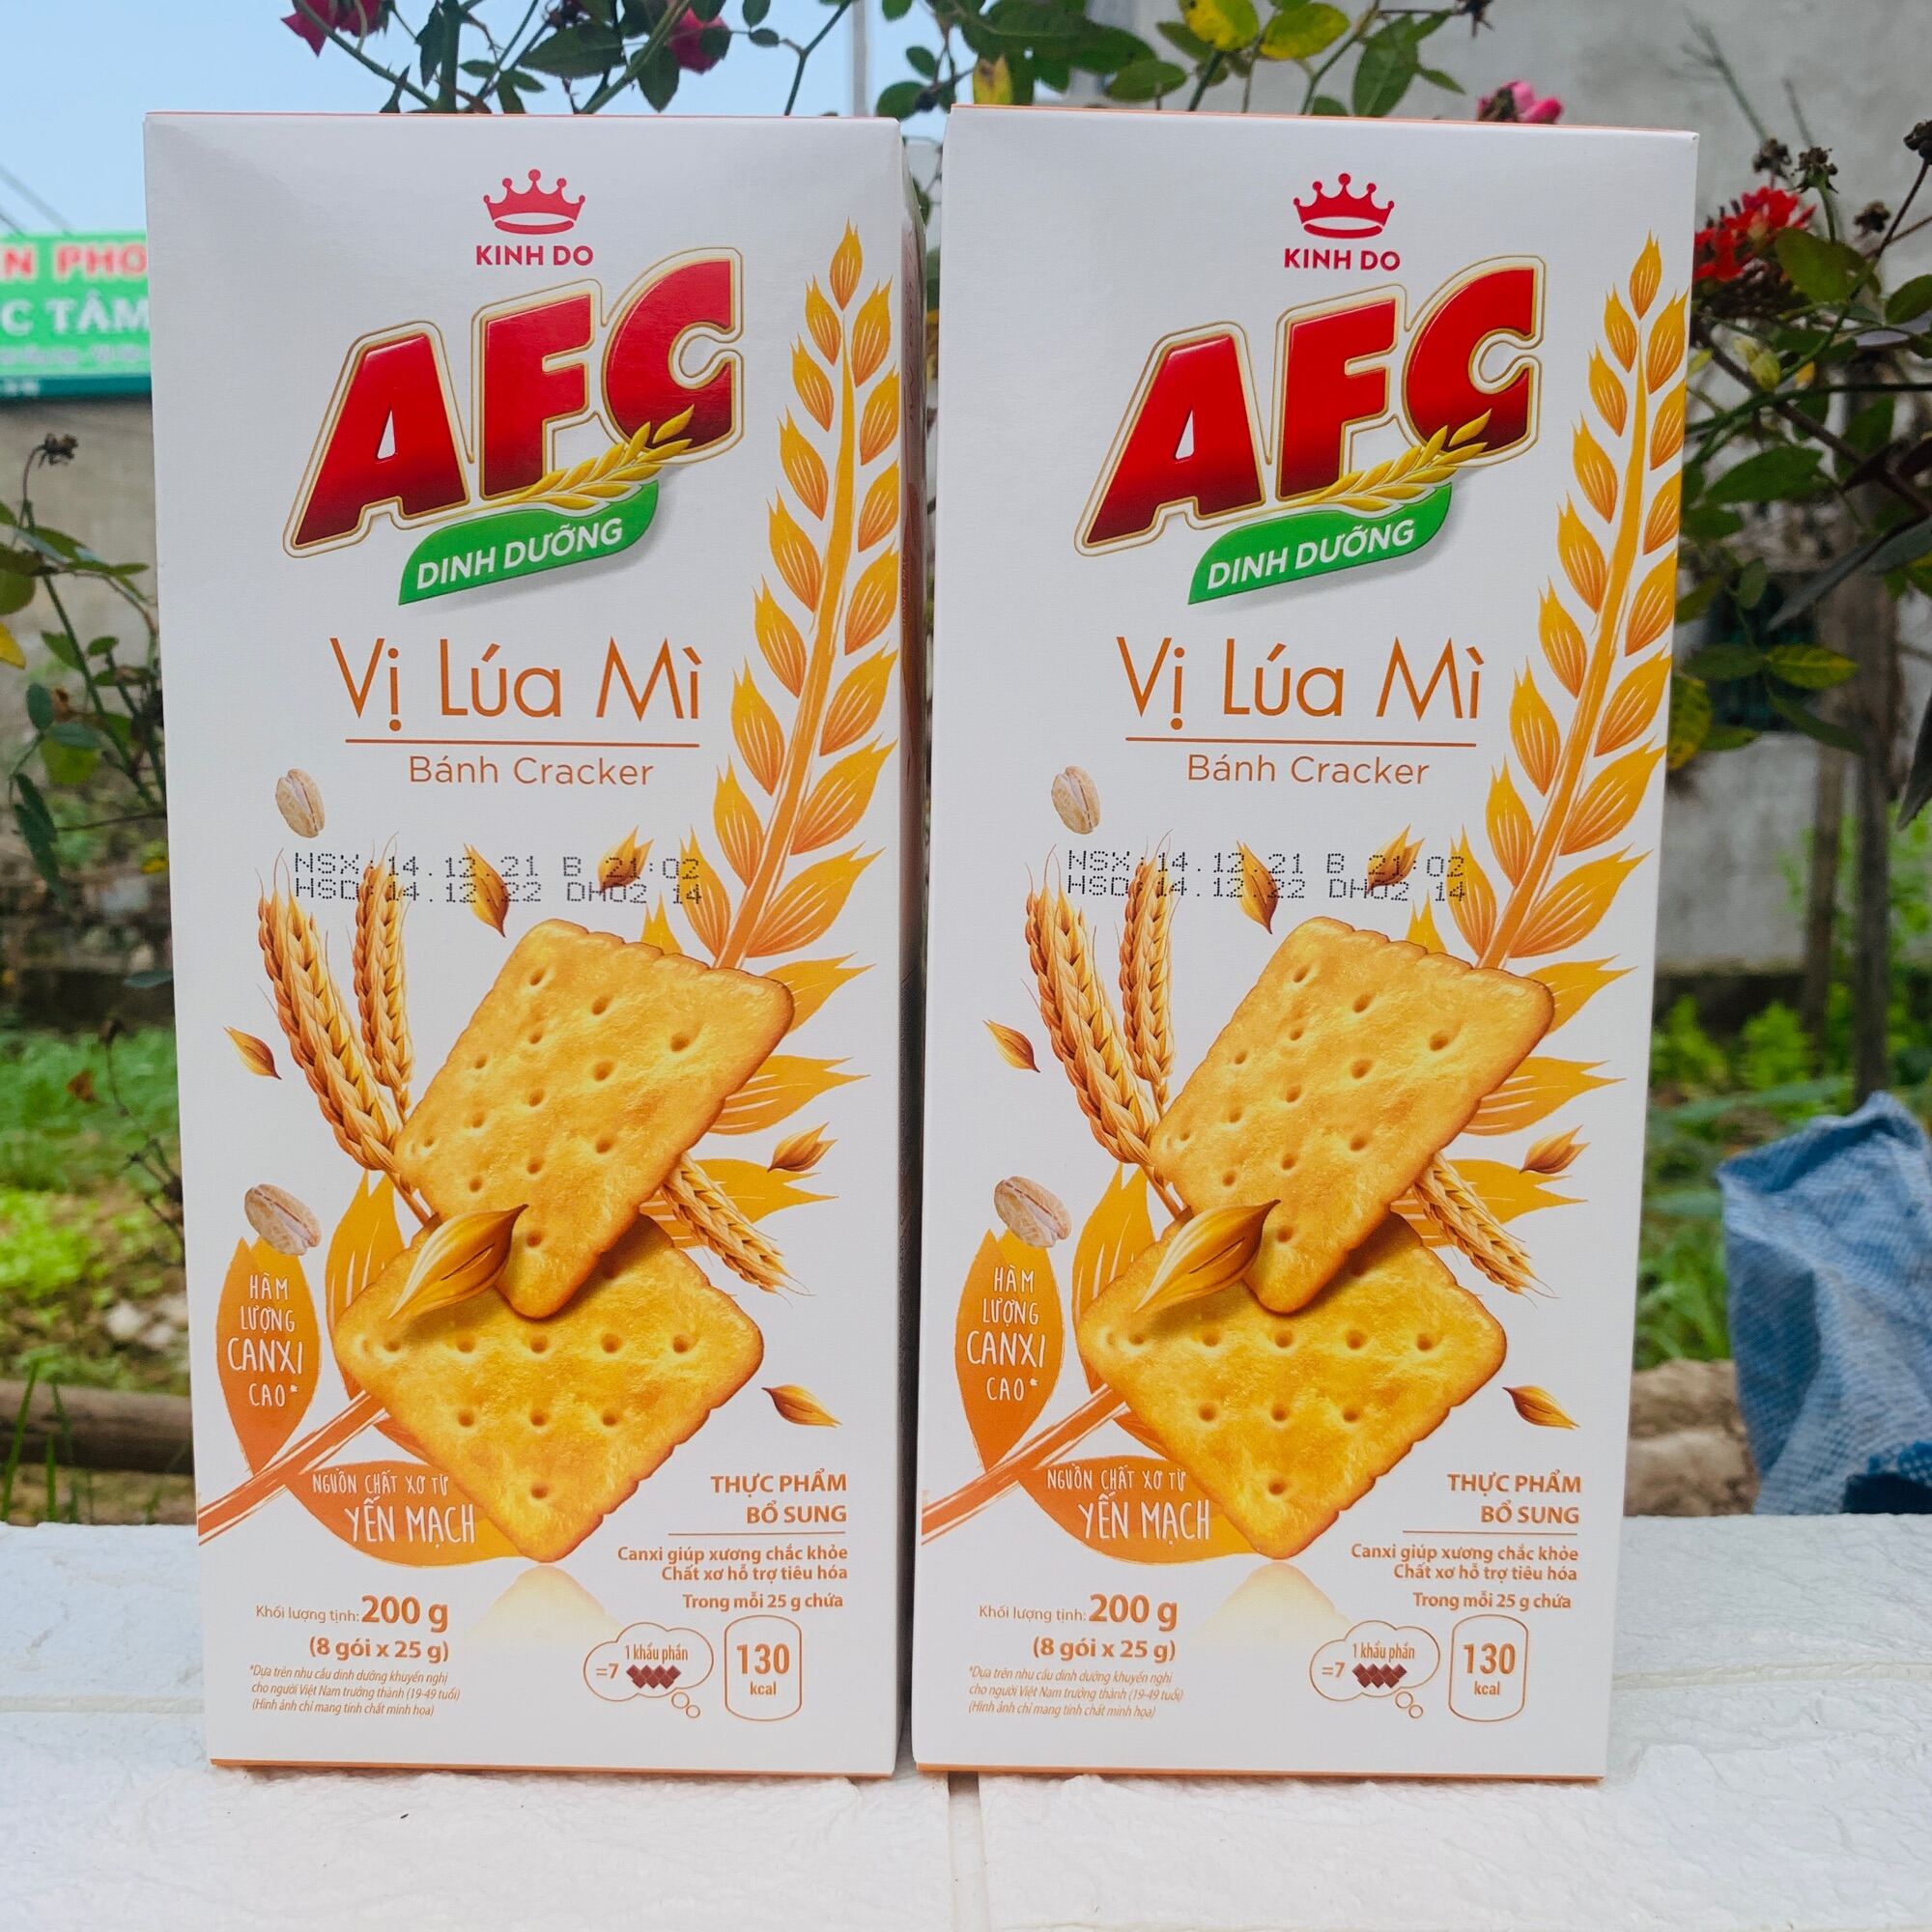 Gửi bánh quy AFC từ Sài Gòn đi Nhật Bản giá rẻ